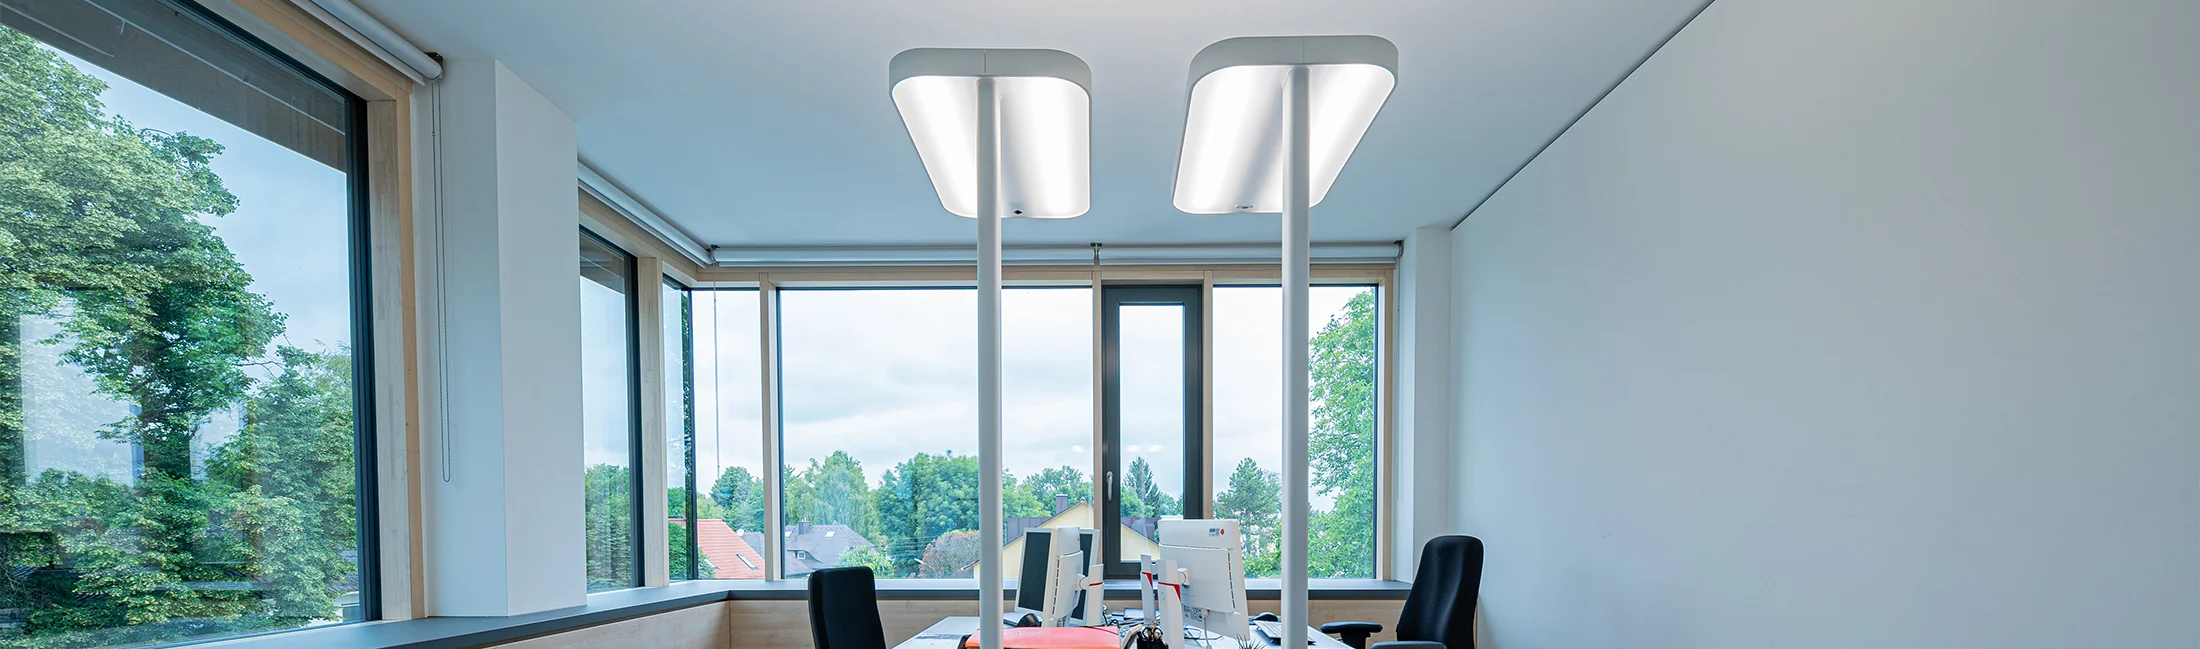 Eine Büro mit optimale Stehleuchte LED für Ausleuchtung die